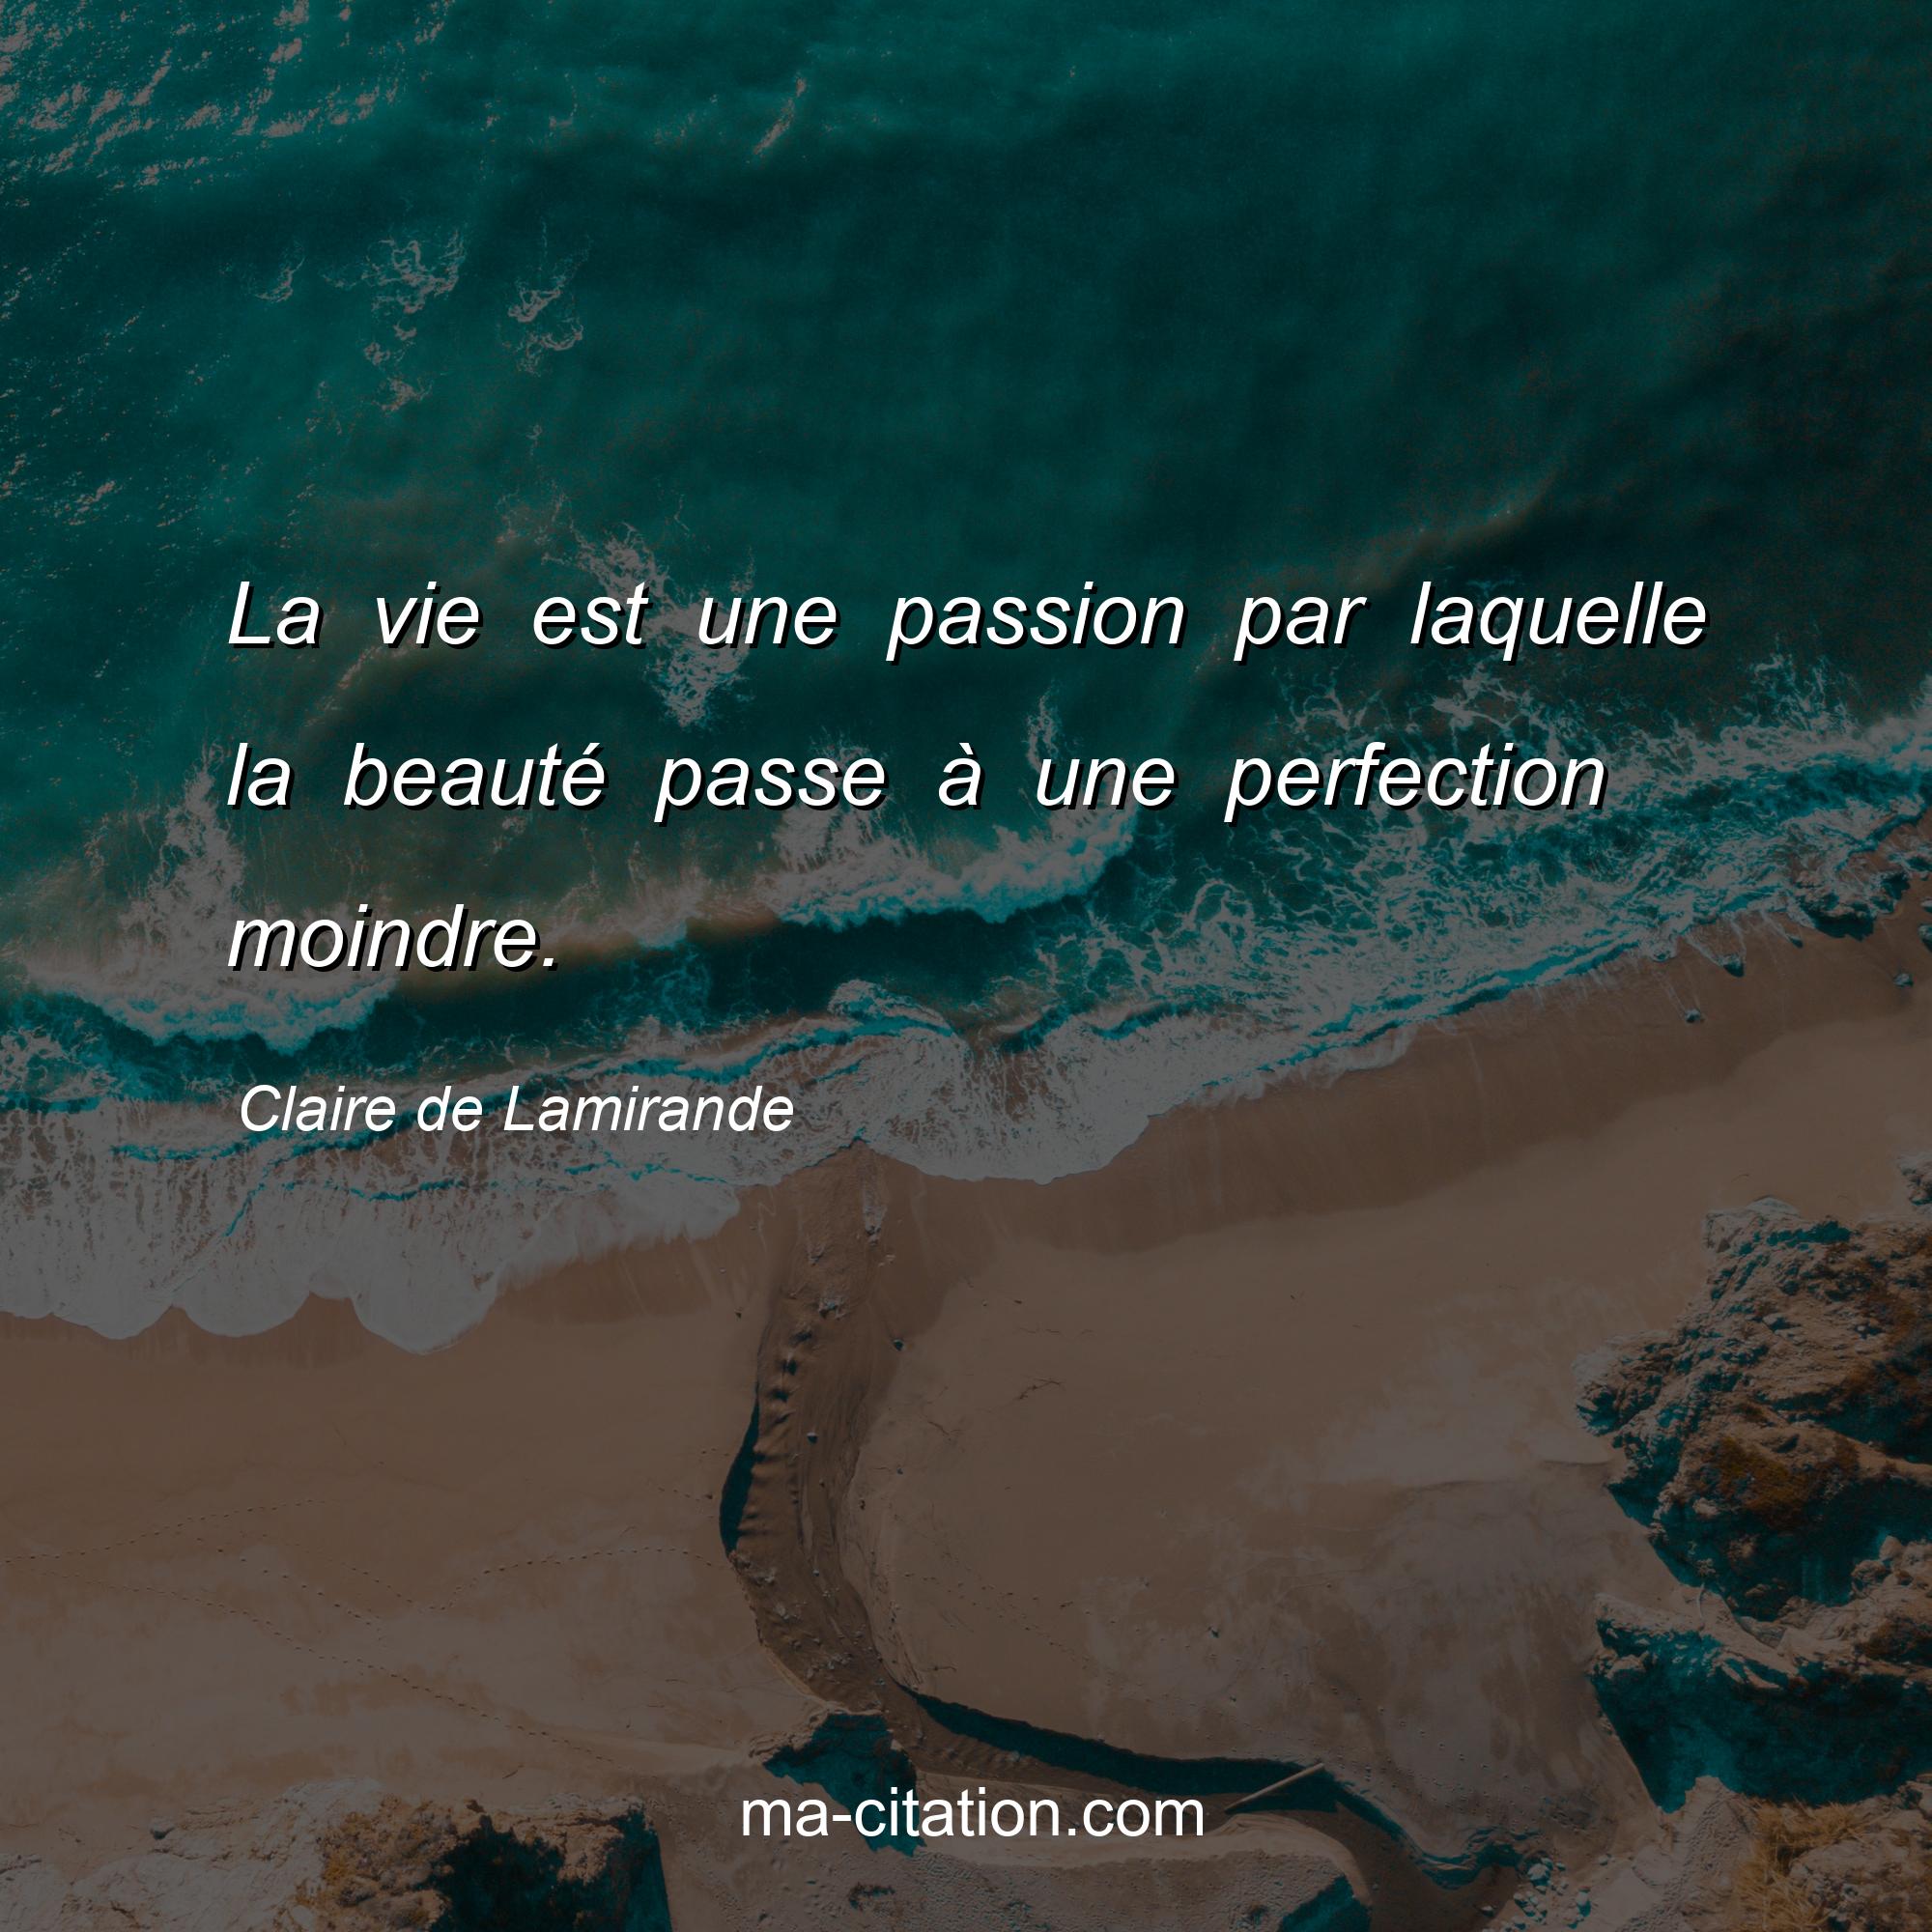 Claire de Lamirande : La vie est une passion par laquelle la beauté passe à une perfection moindre.